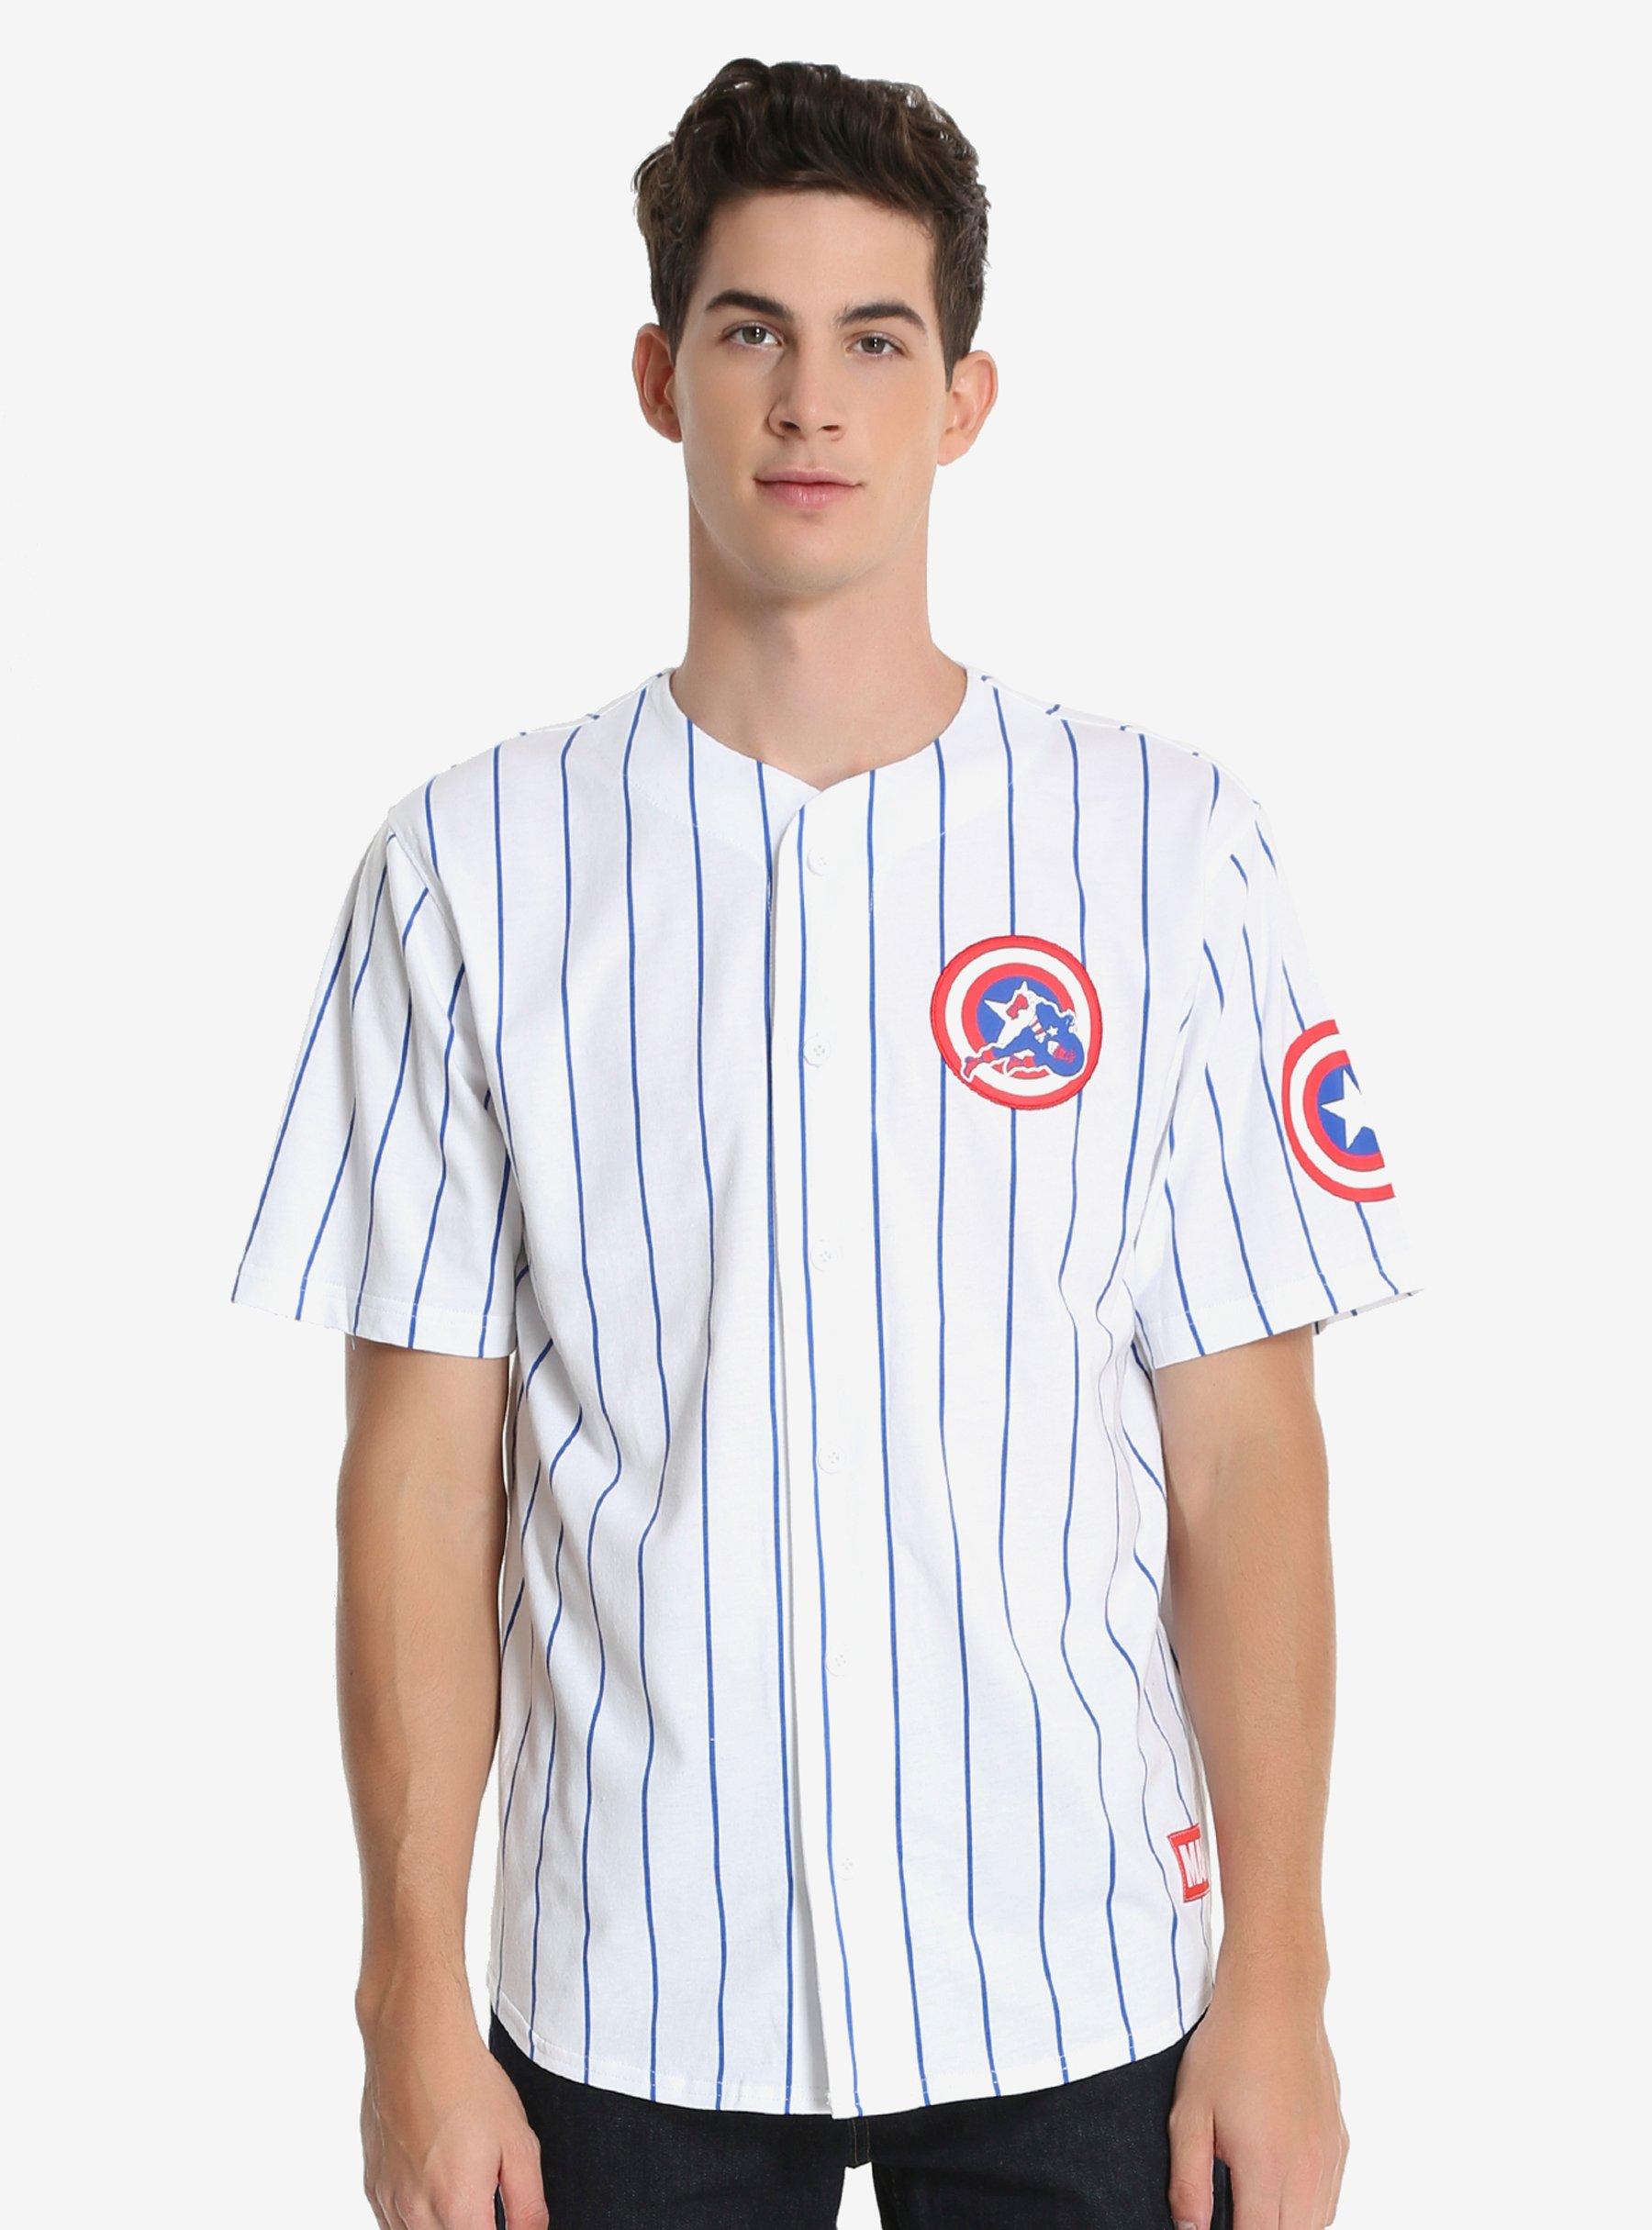 Marvel Captain America Striped Baseball Jersey, WHITE, hi-res